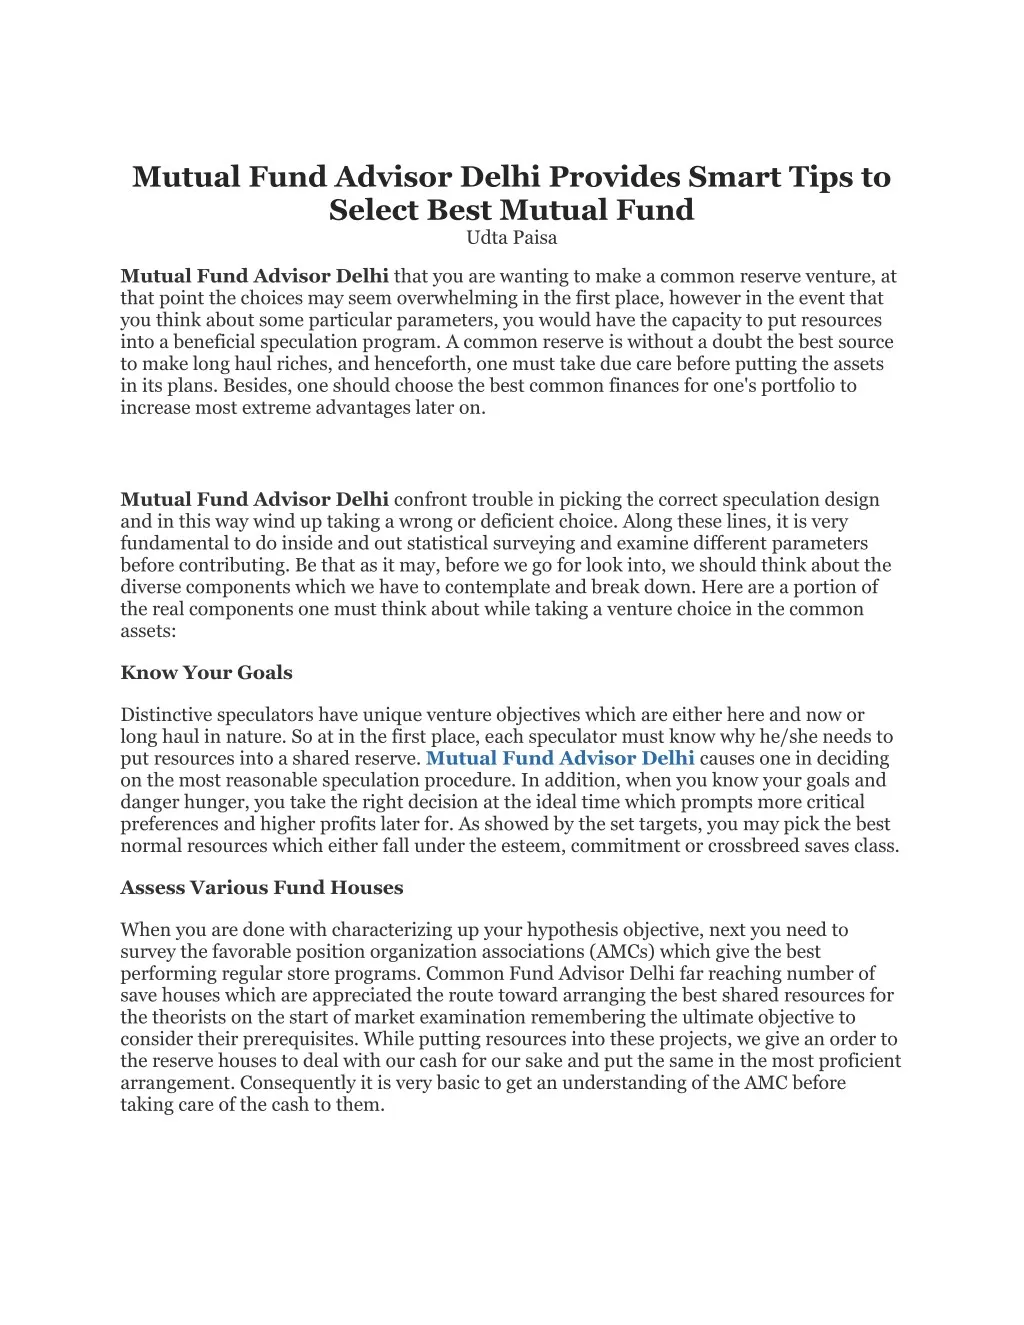 mutual fund advisor delhi provides smart tips